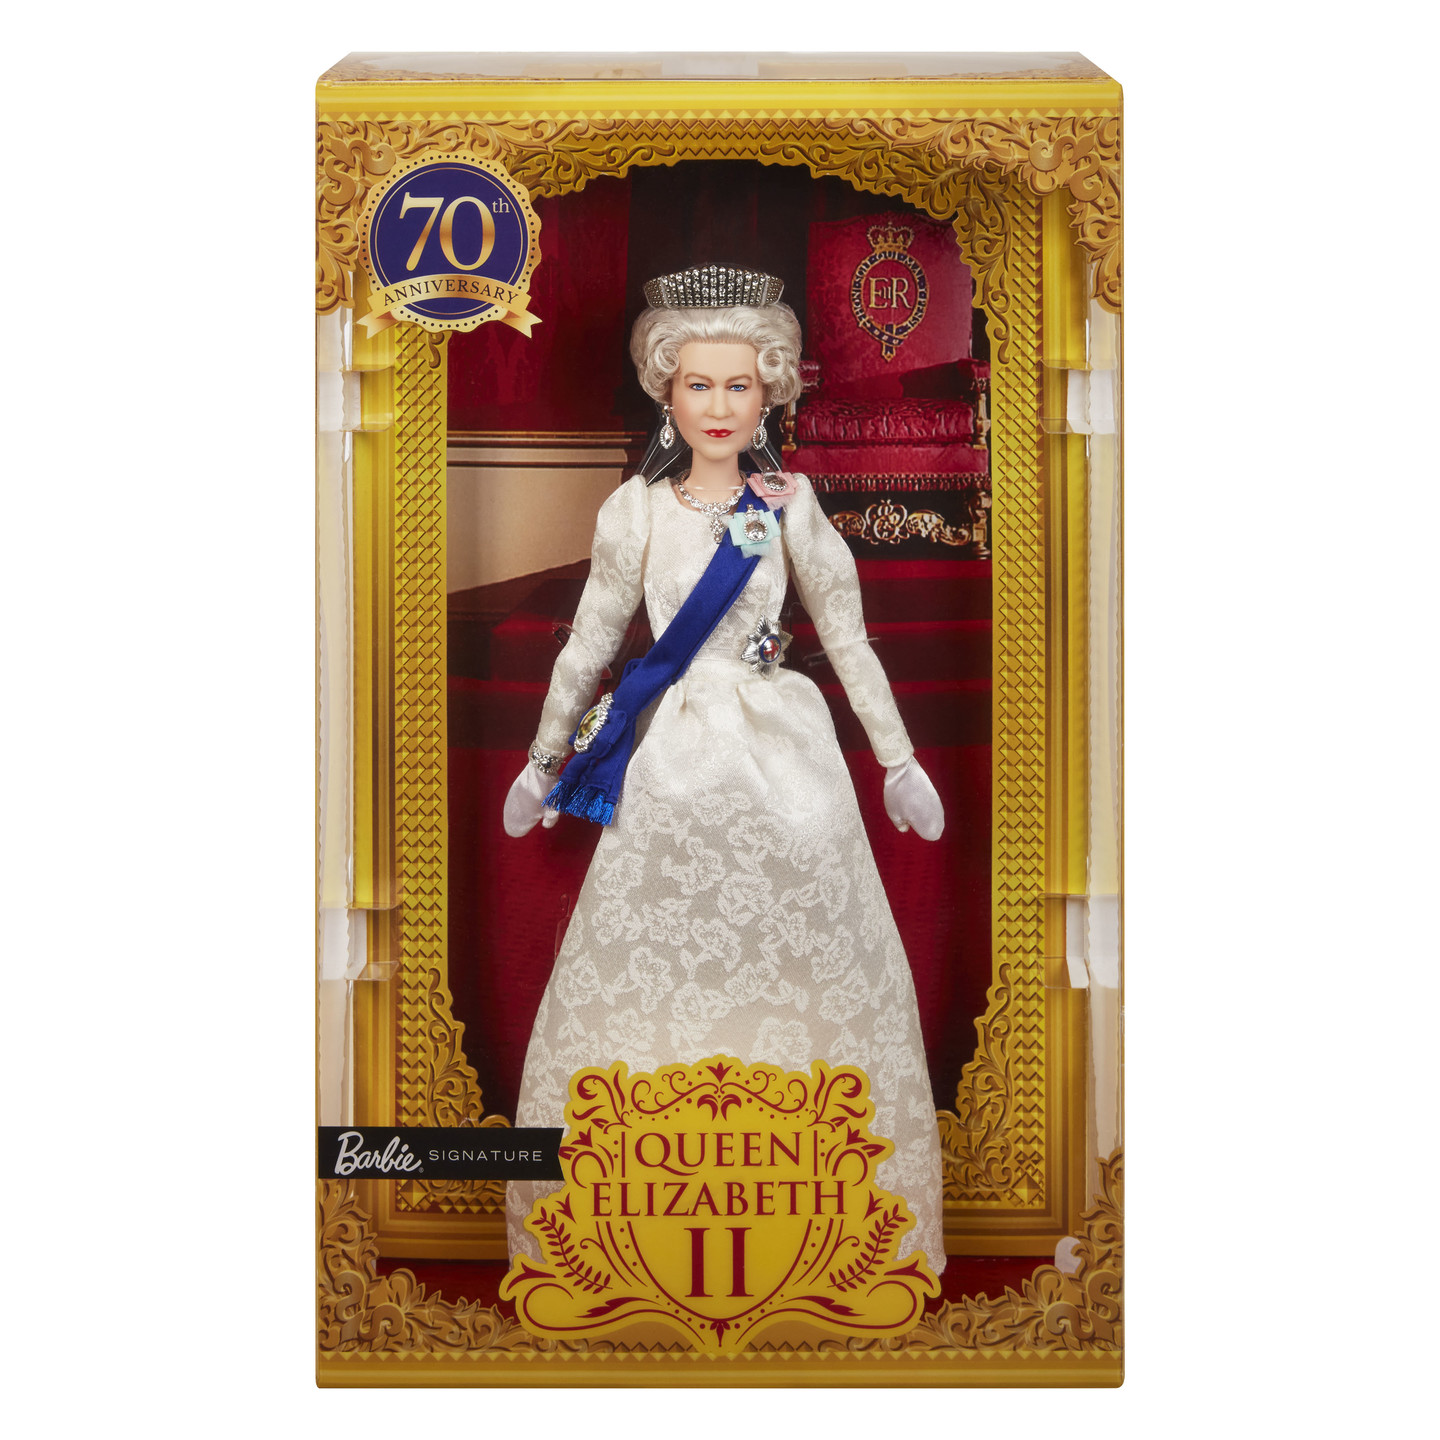 we Green Catastrophe Elisabetta II: arriva la bambola con corona e fascia. Nasce Barbie Regina